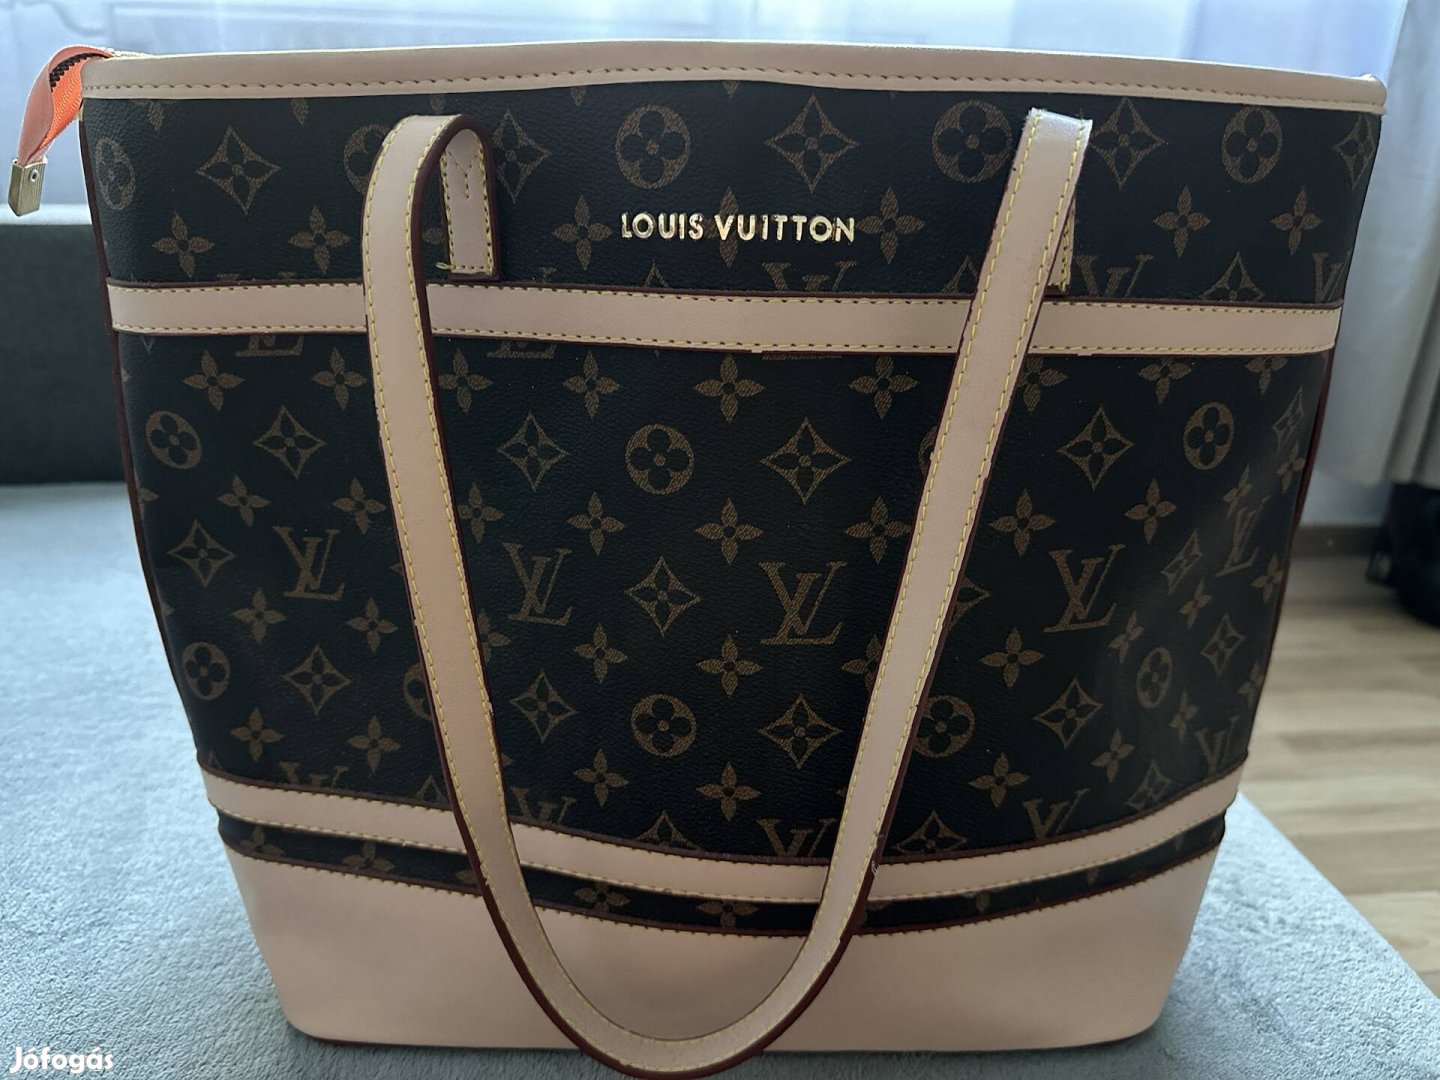 Replika Loius Vuitton táska